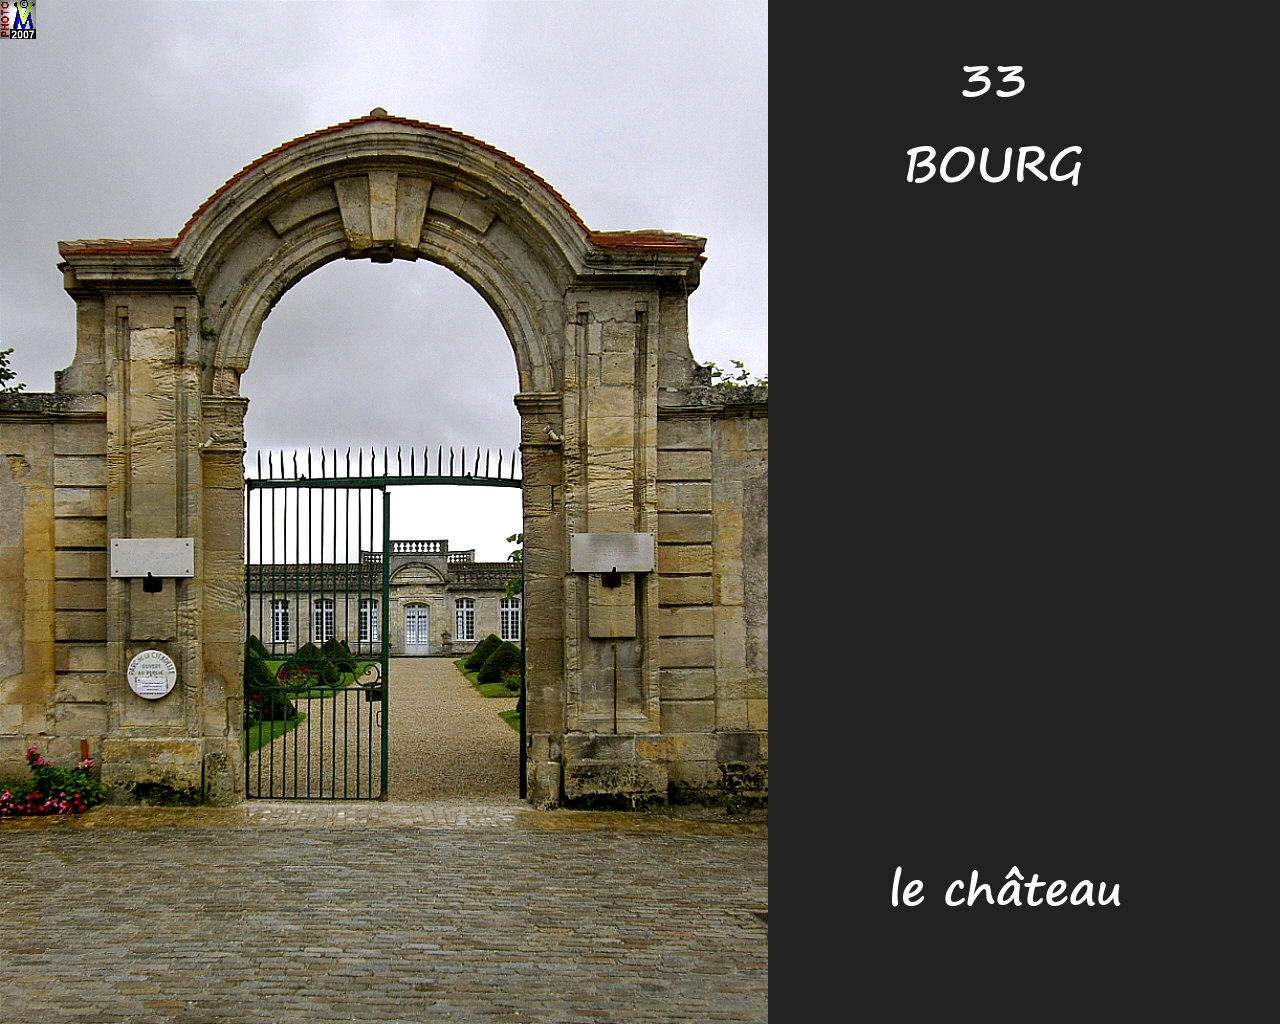 33BOURG_chateau_100.jpg